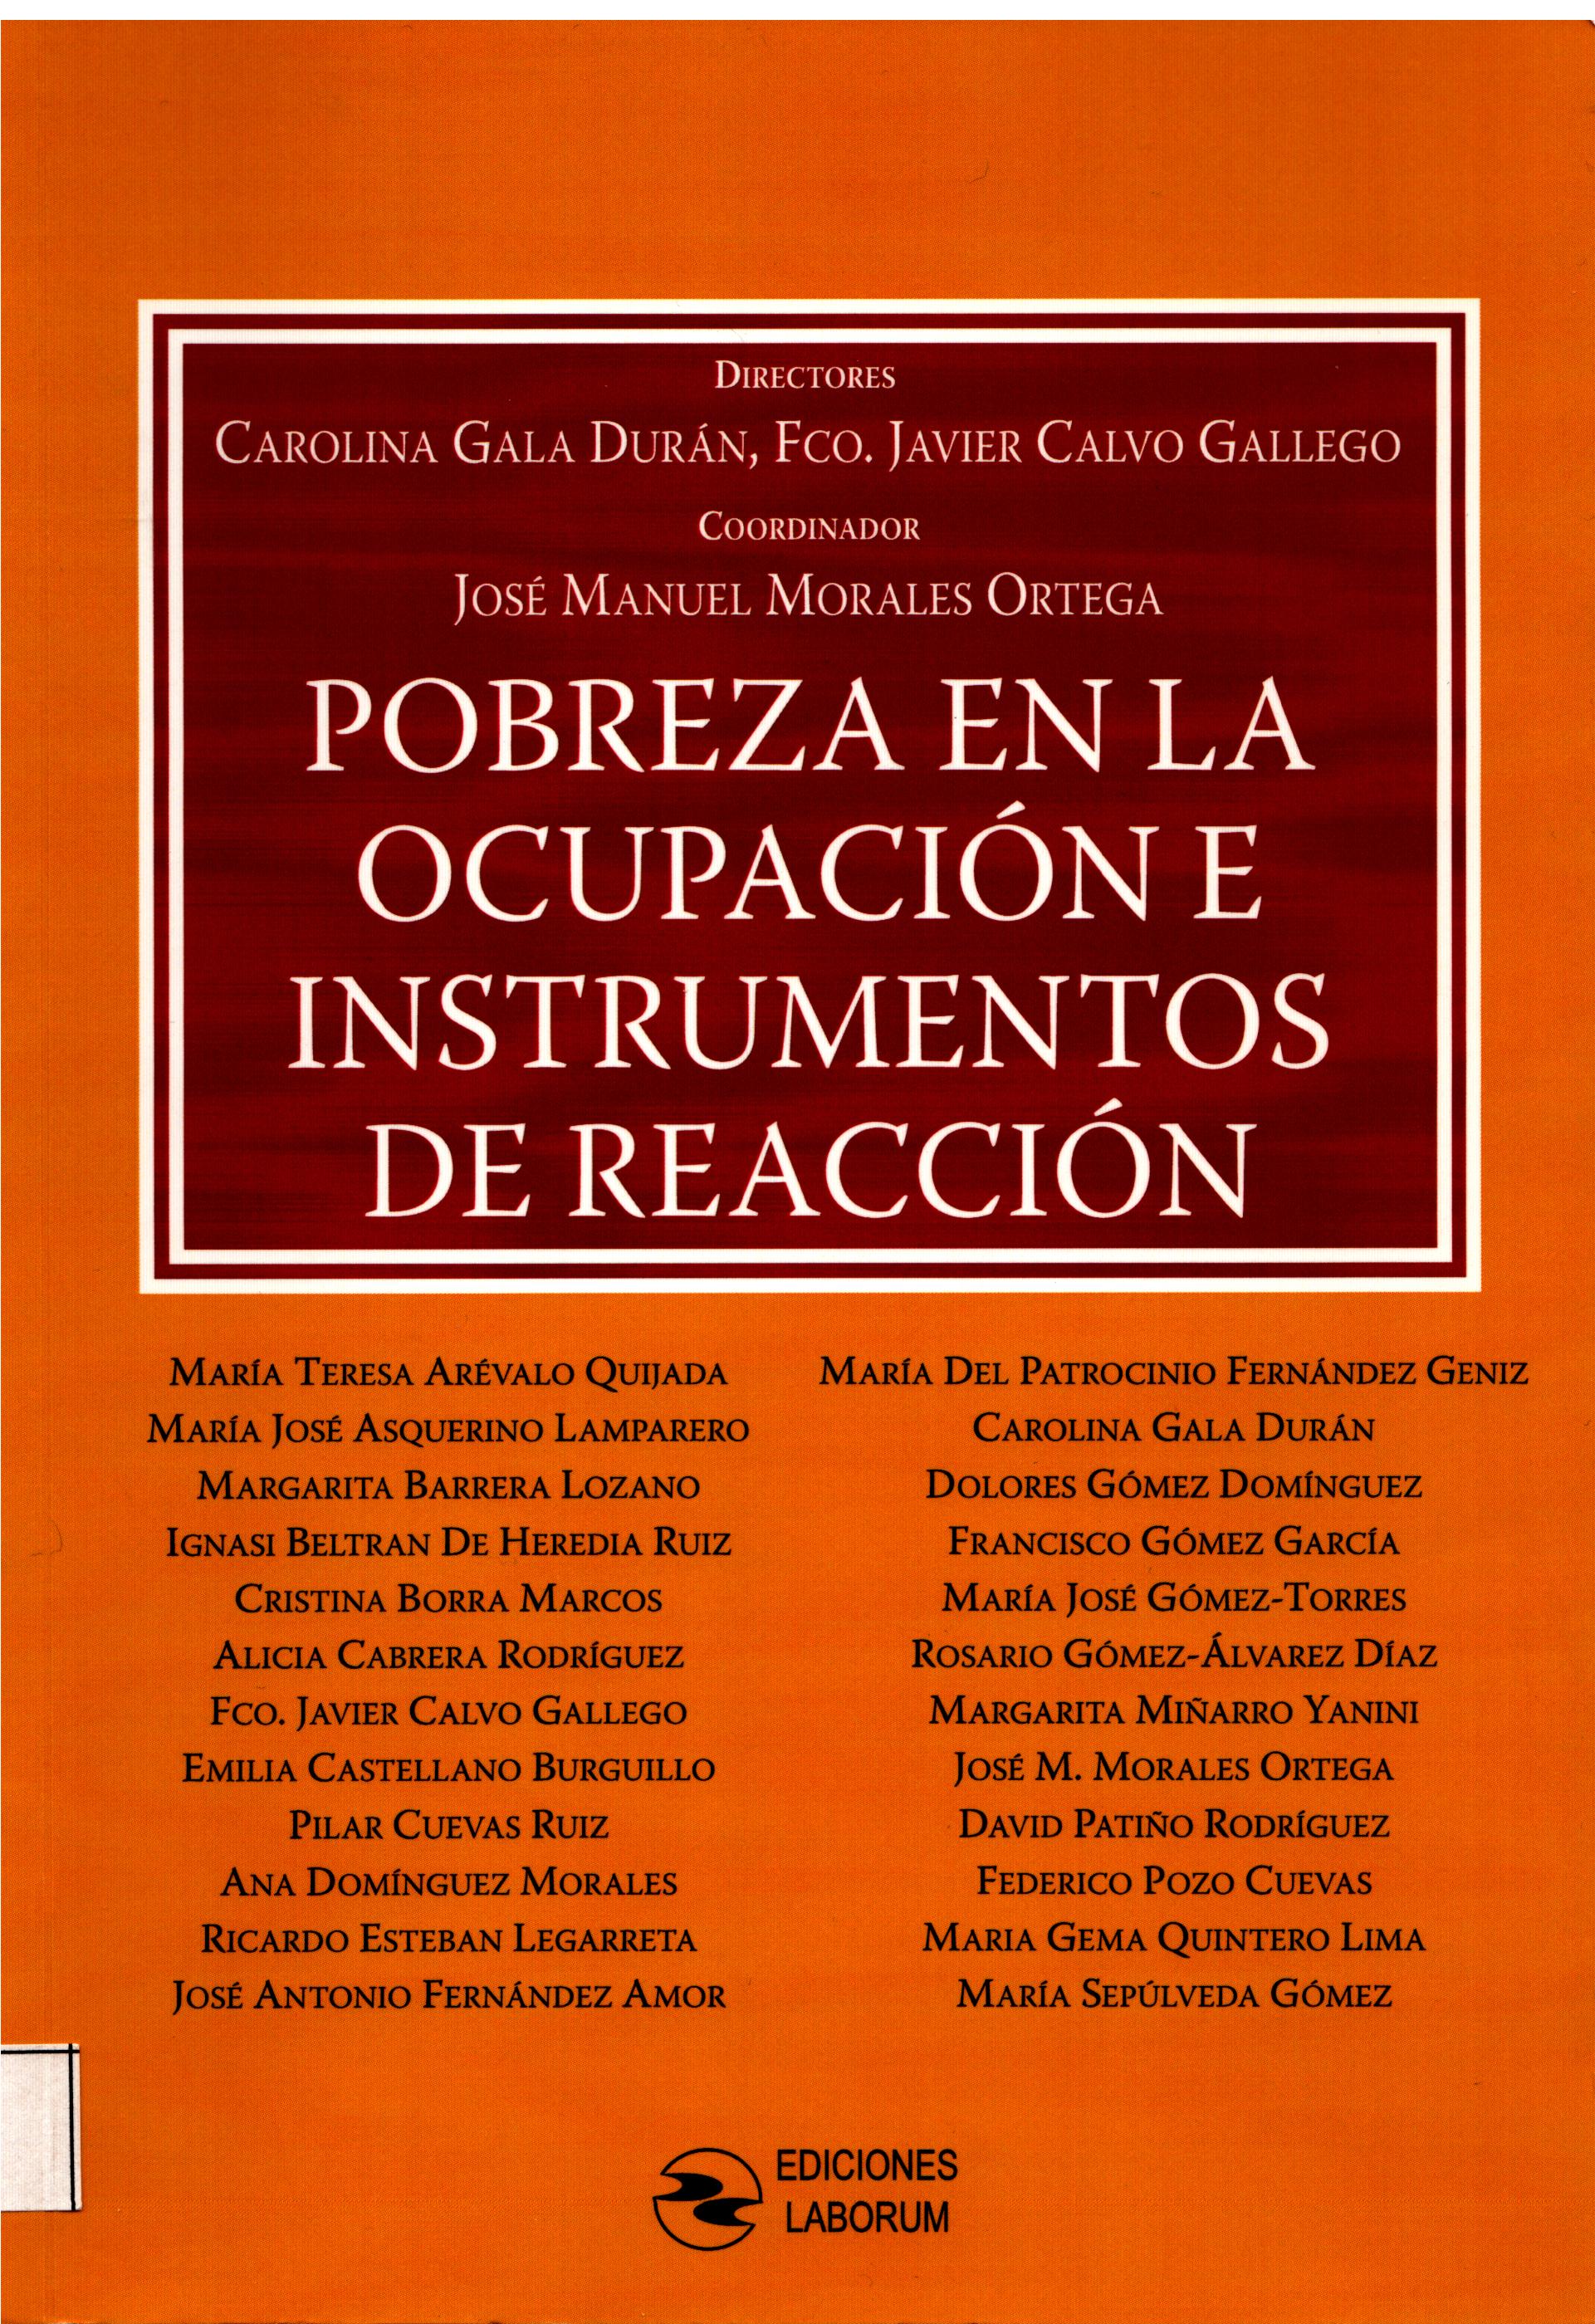 Imagen de portada del libro Pobreza en la ocupación e instrumentos de reacción